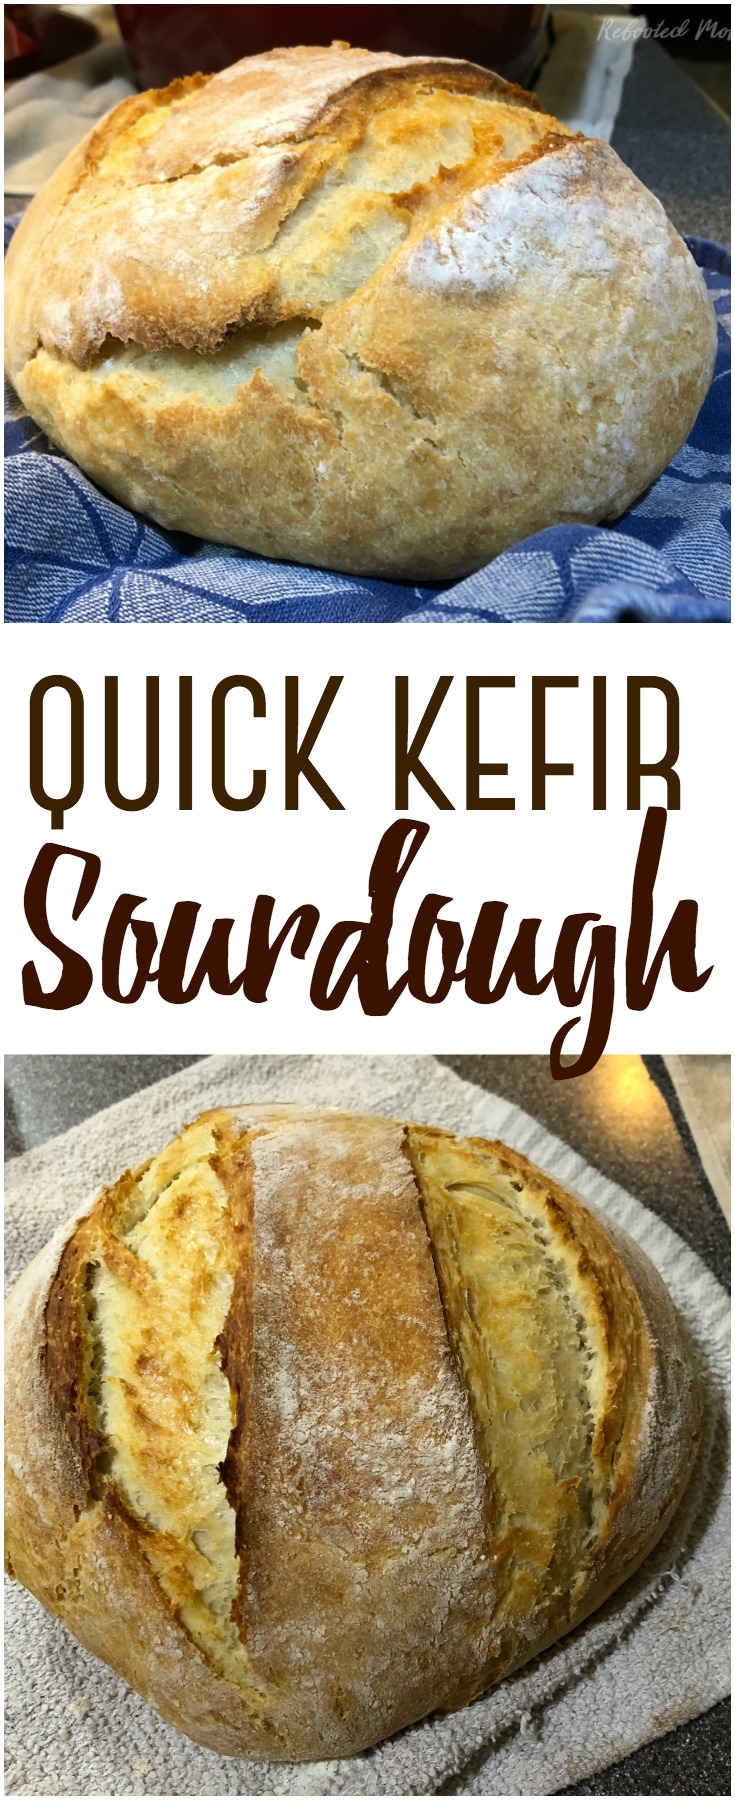 Make a successful quick kefir sourdough bread using kefir fermented milk in lieu of a sourdough starter. It bakes up beautifully!